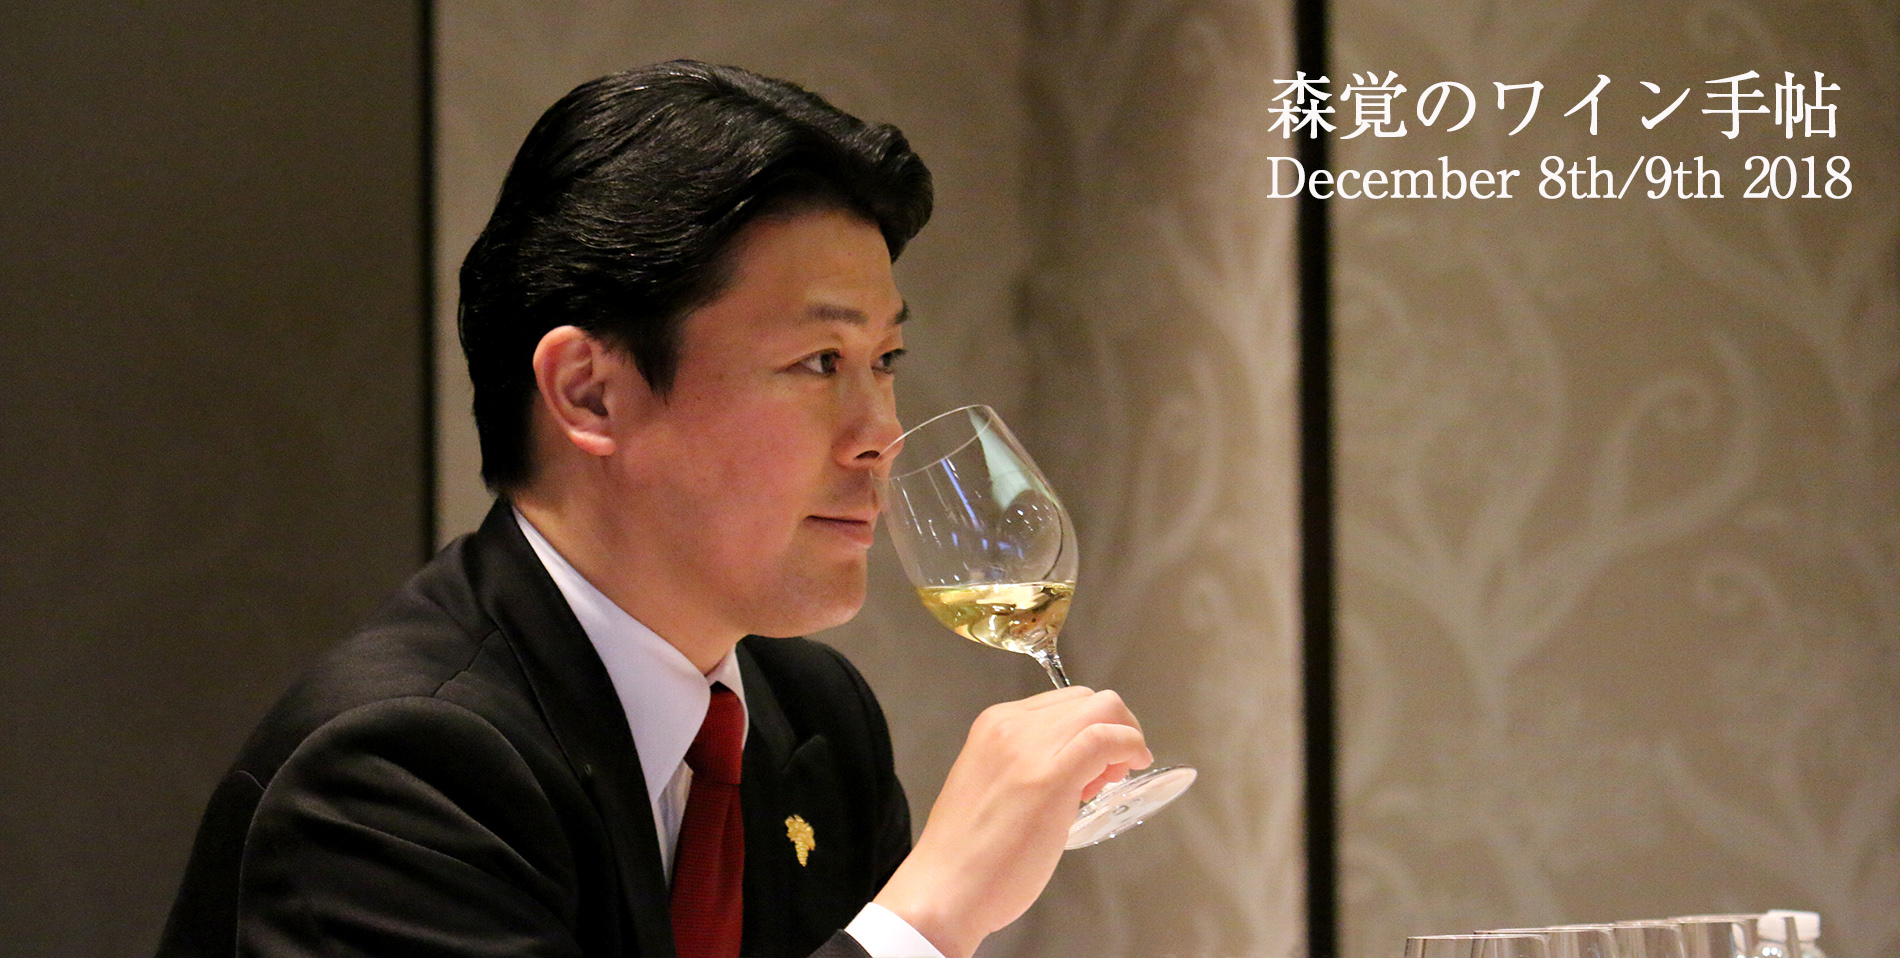 「森覚のワイン手帖」ワインセミナー開催